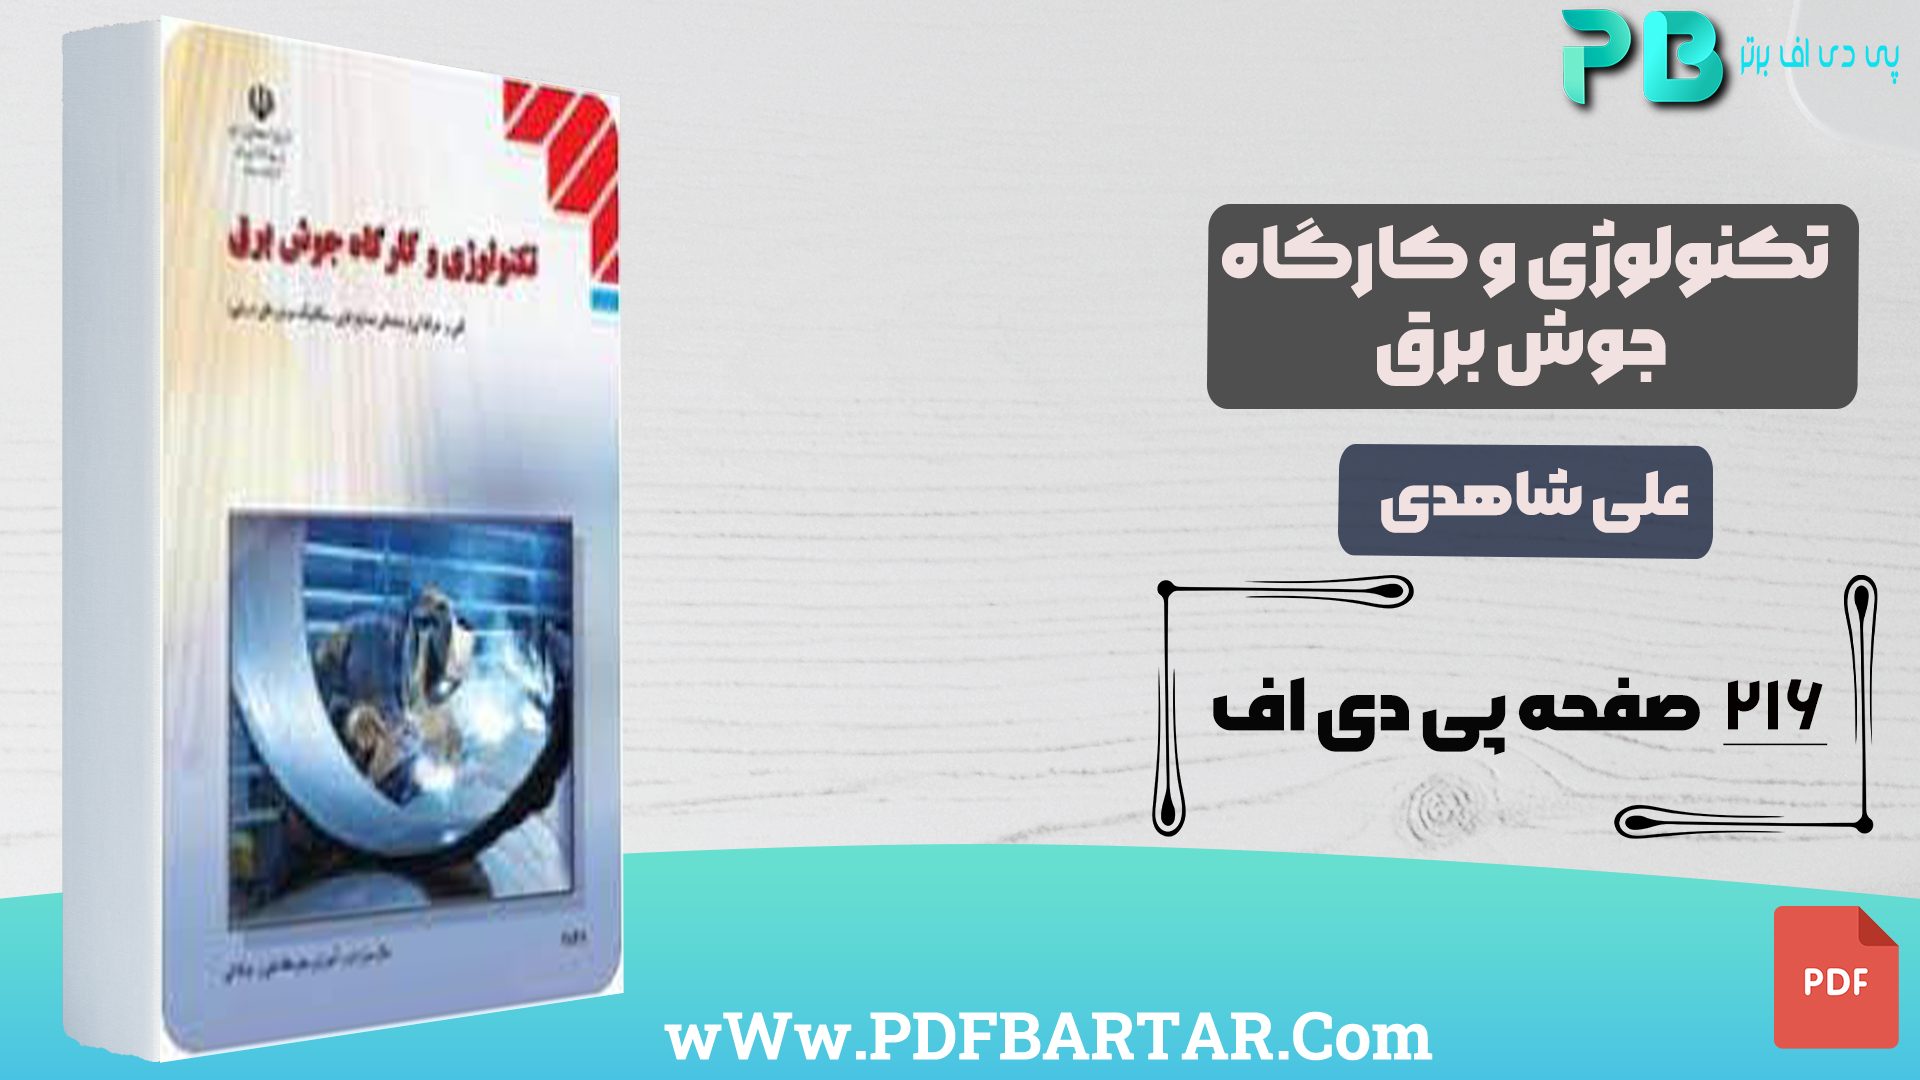 دانلود پی دی اف کتاب تکنولوژی و کارگاه جوش برق علی شاهدی PDF - پی دی اف برتر